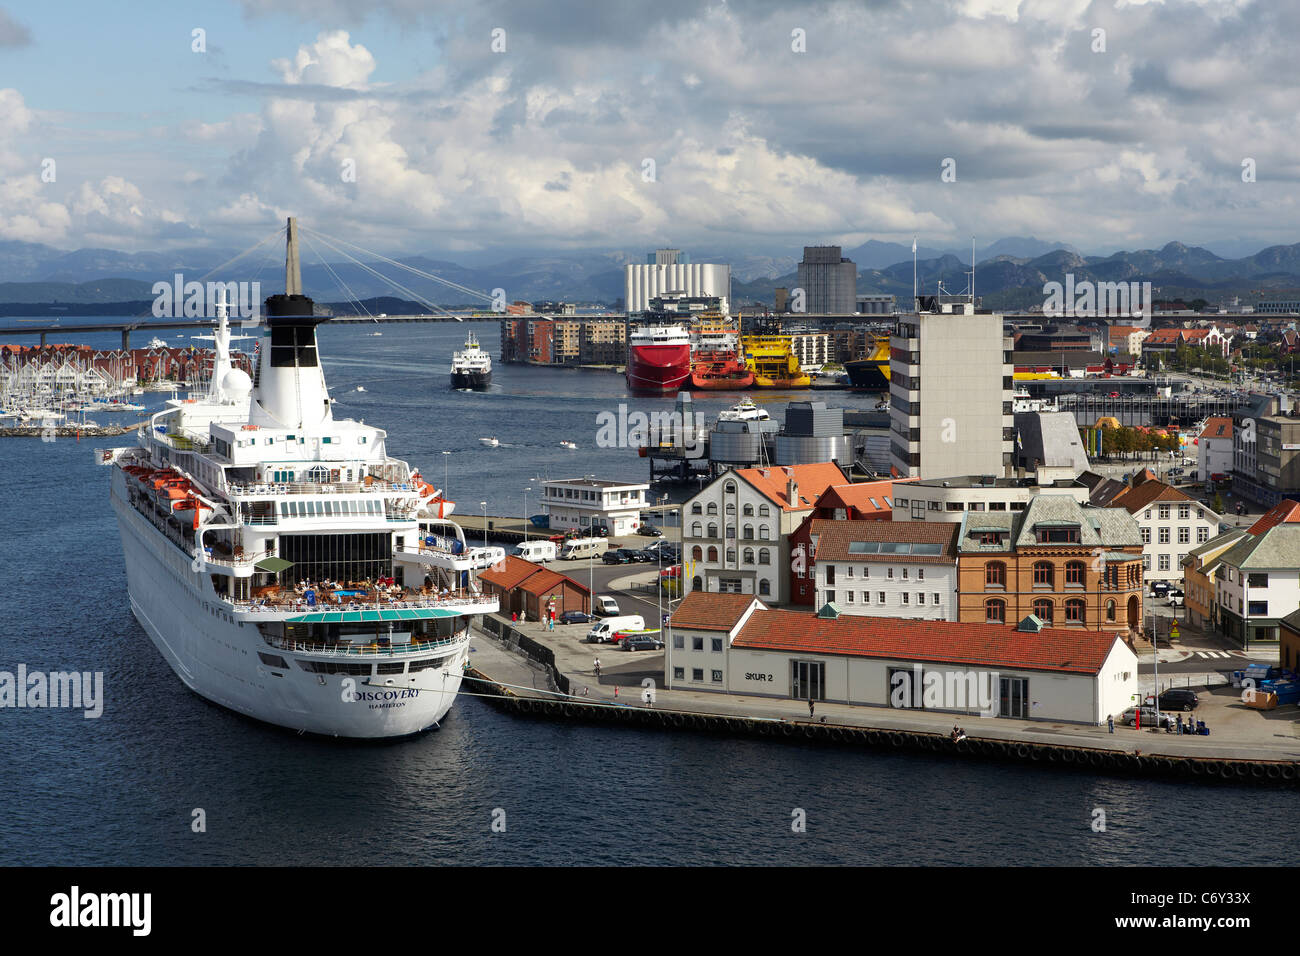 La nave da crociera scoperta, ormeggiata al Porto di Stavanger, Norvegia, con anchor handling rimorchiatori in background. Foto Stock